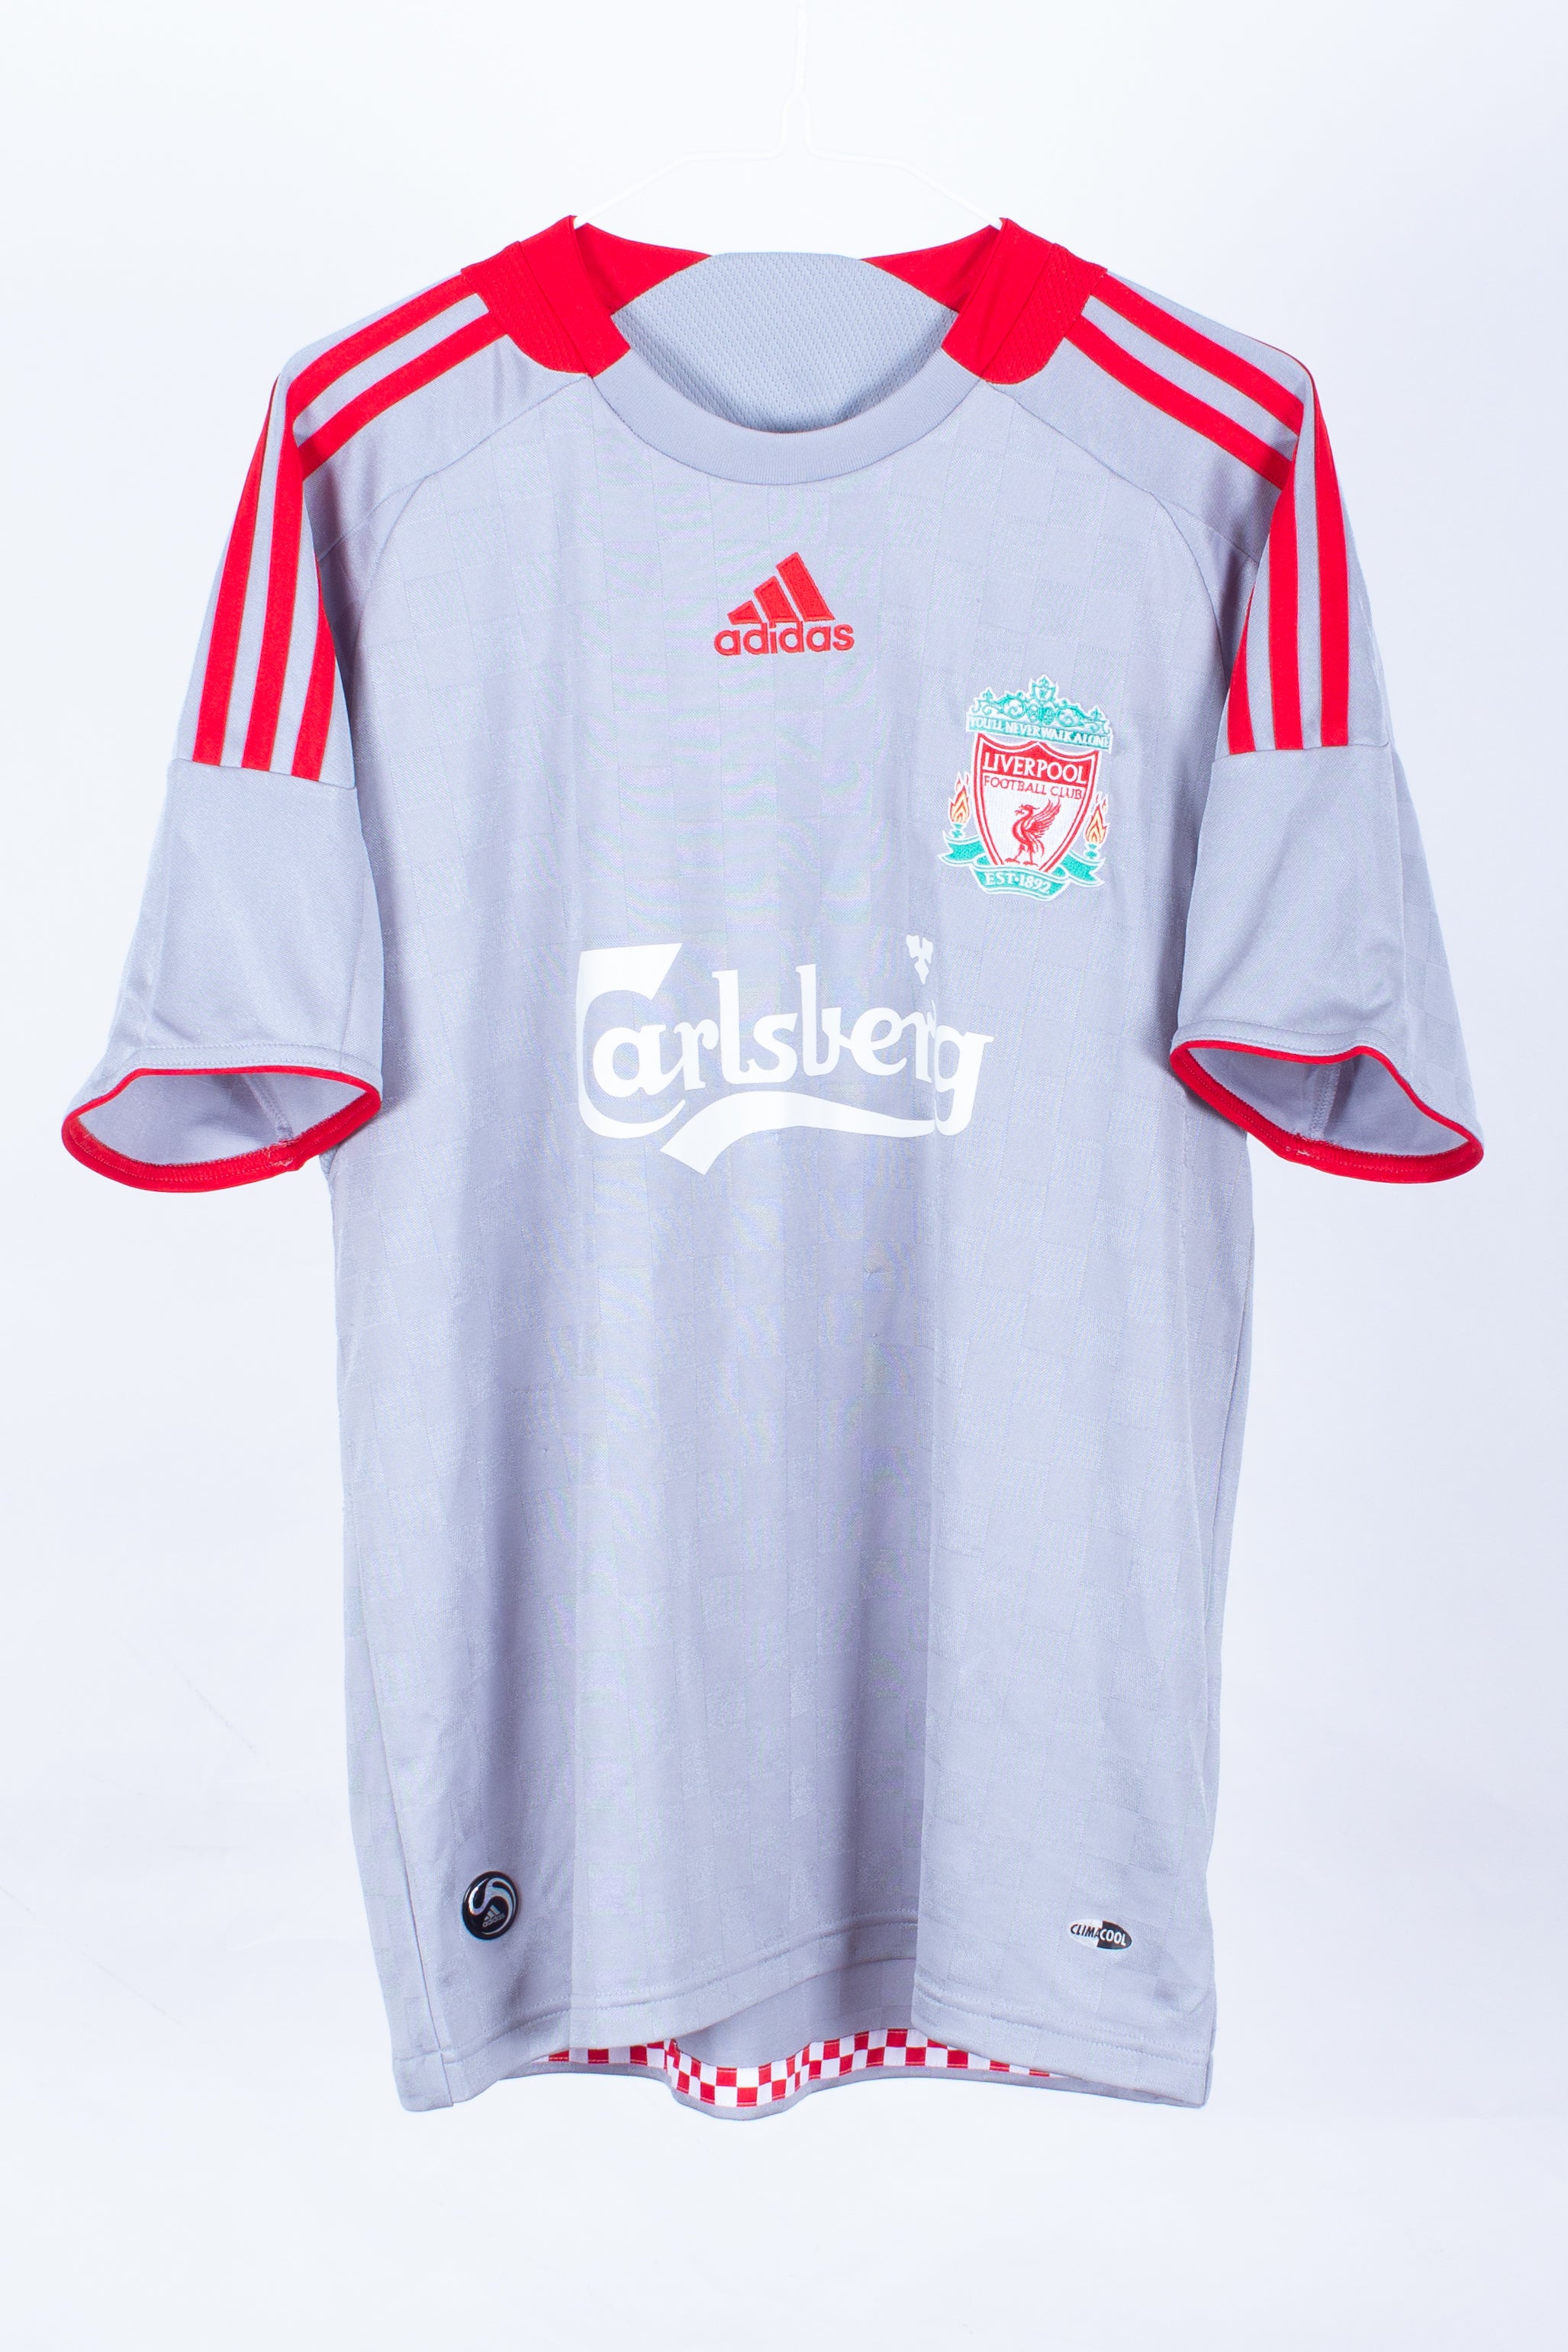 2008-2009 Liverpool Adidas Away Shirt